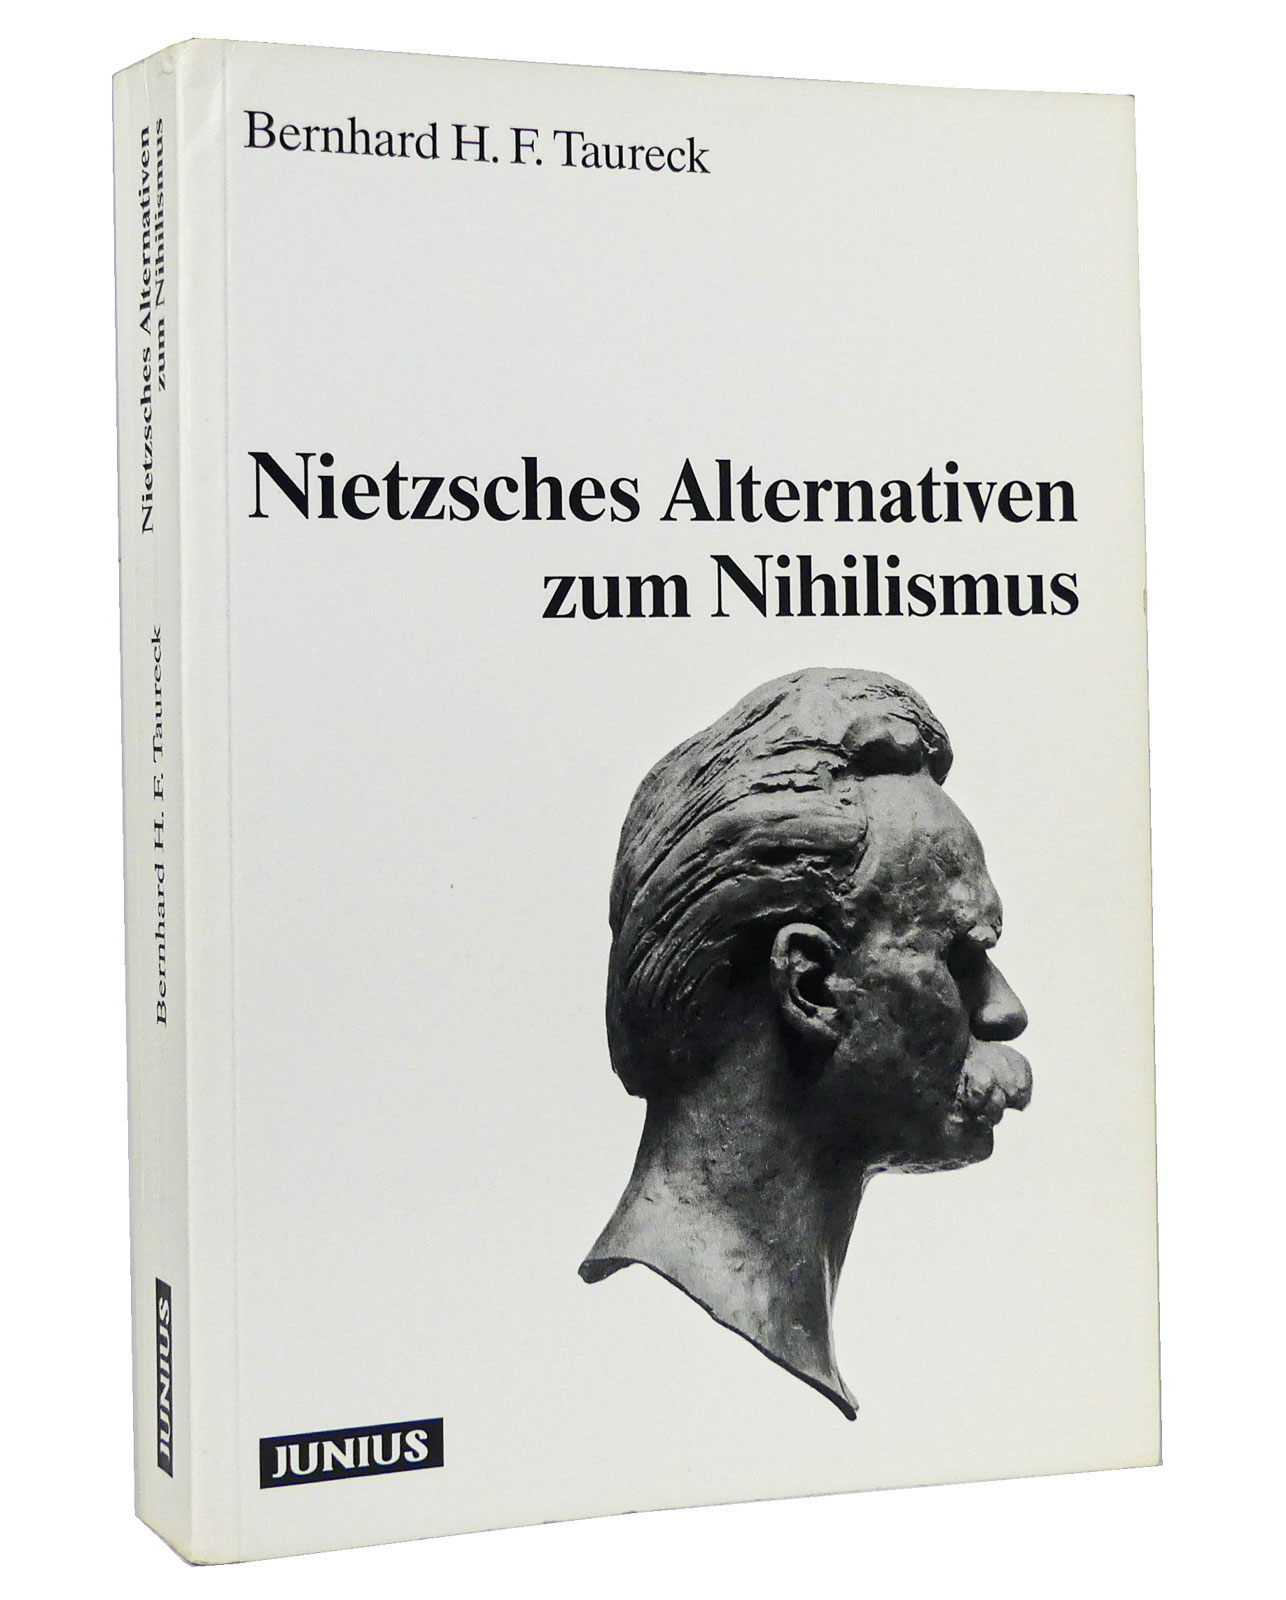 Nietzsches Alternativen zum Nihilismus - Taureck, Bernhard H. F.